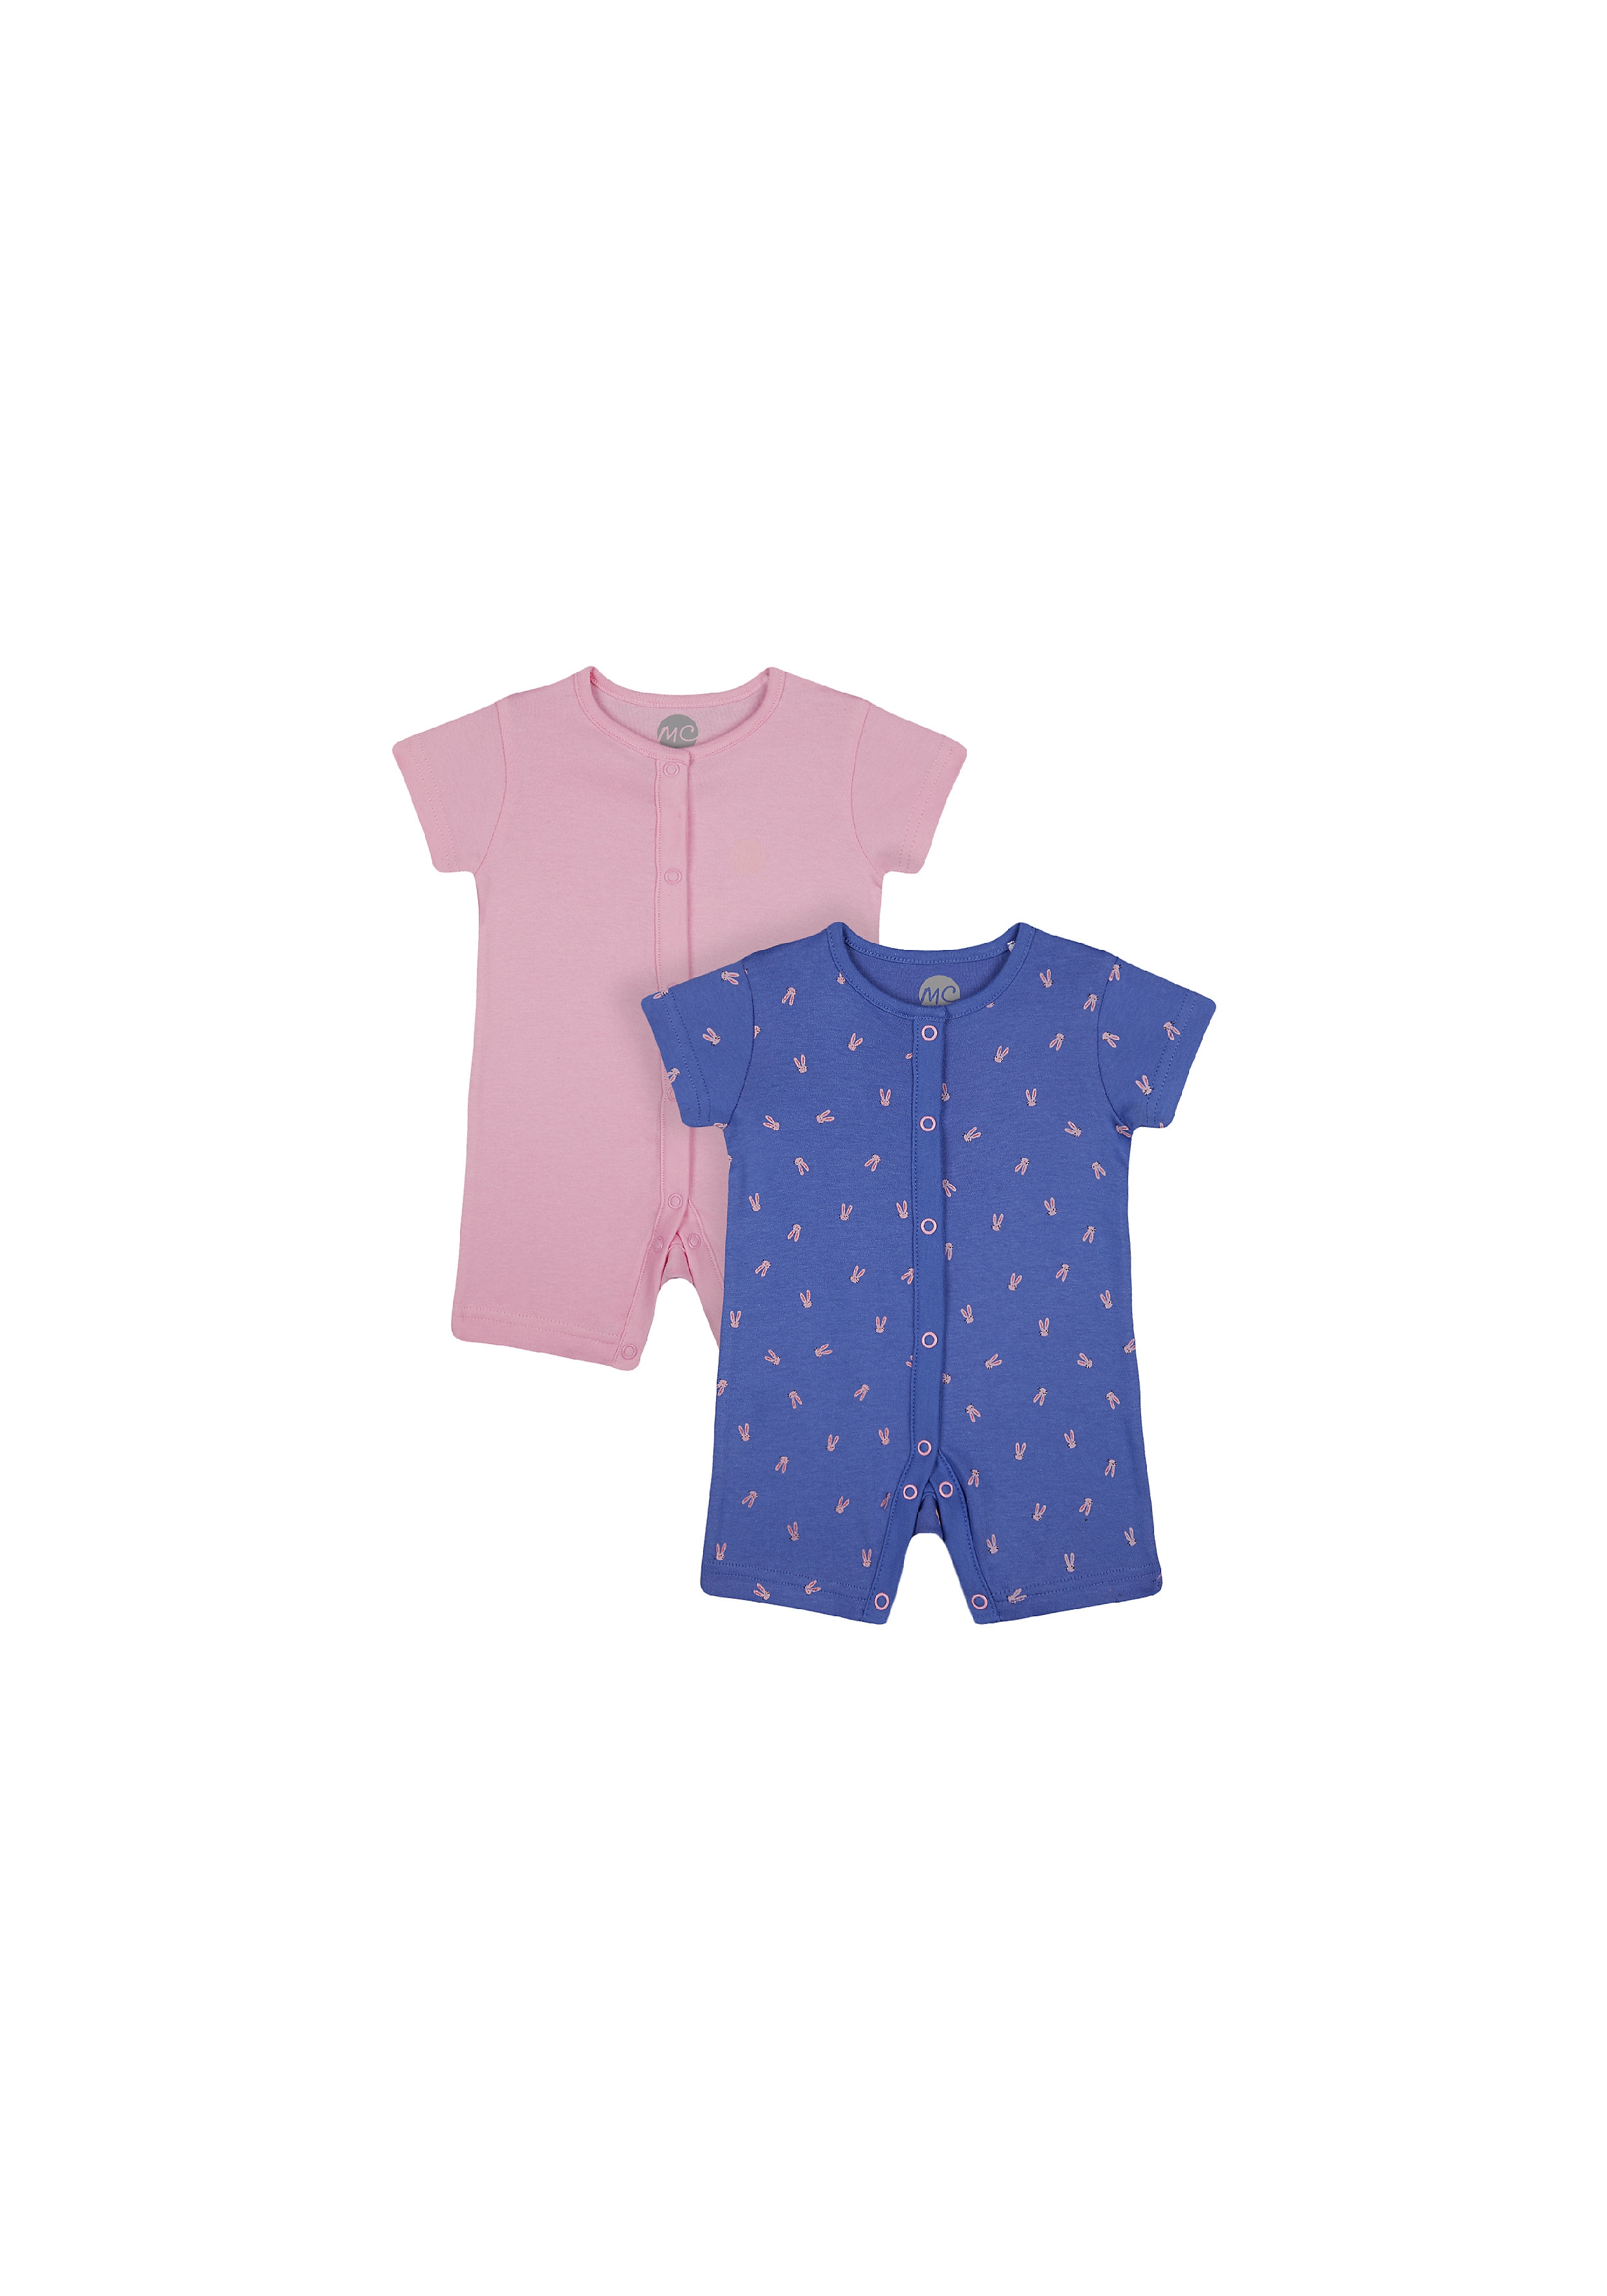 Girls Half Sleeves Romper Bunny Print - Pack Of 2 - Blue Pink